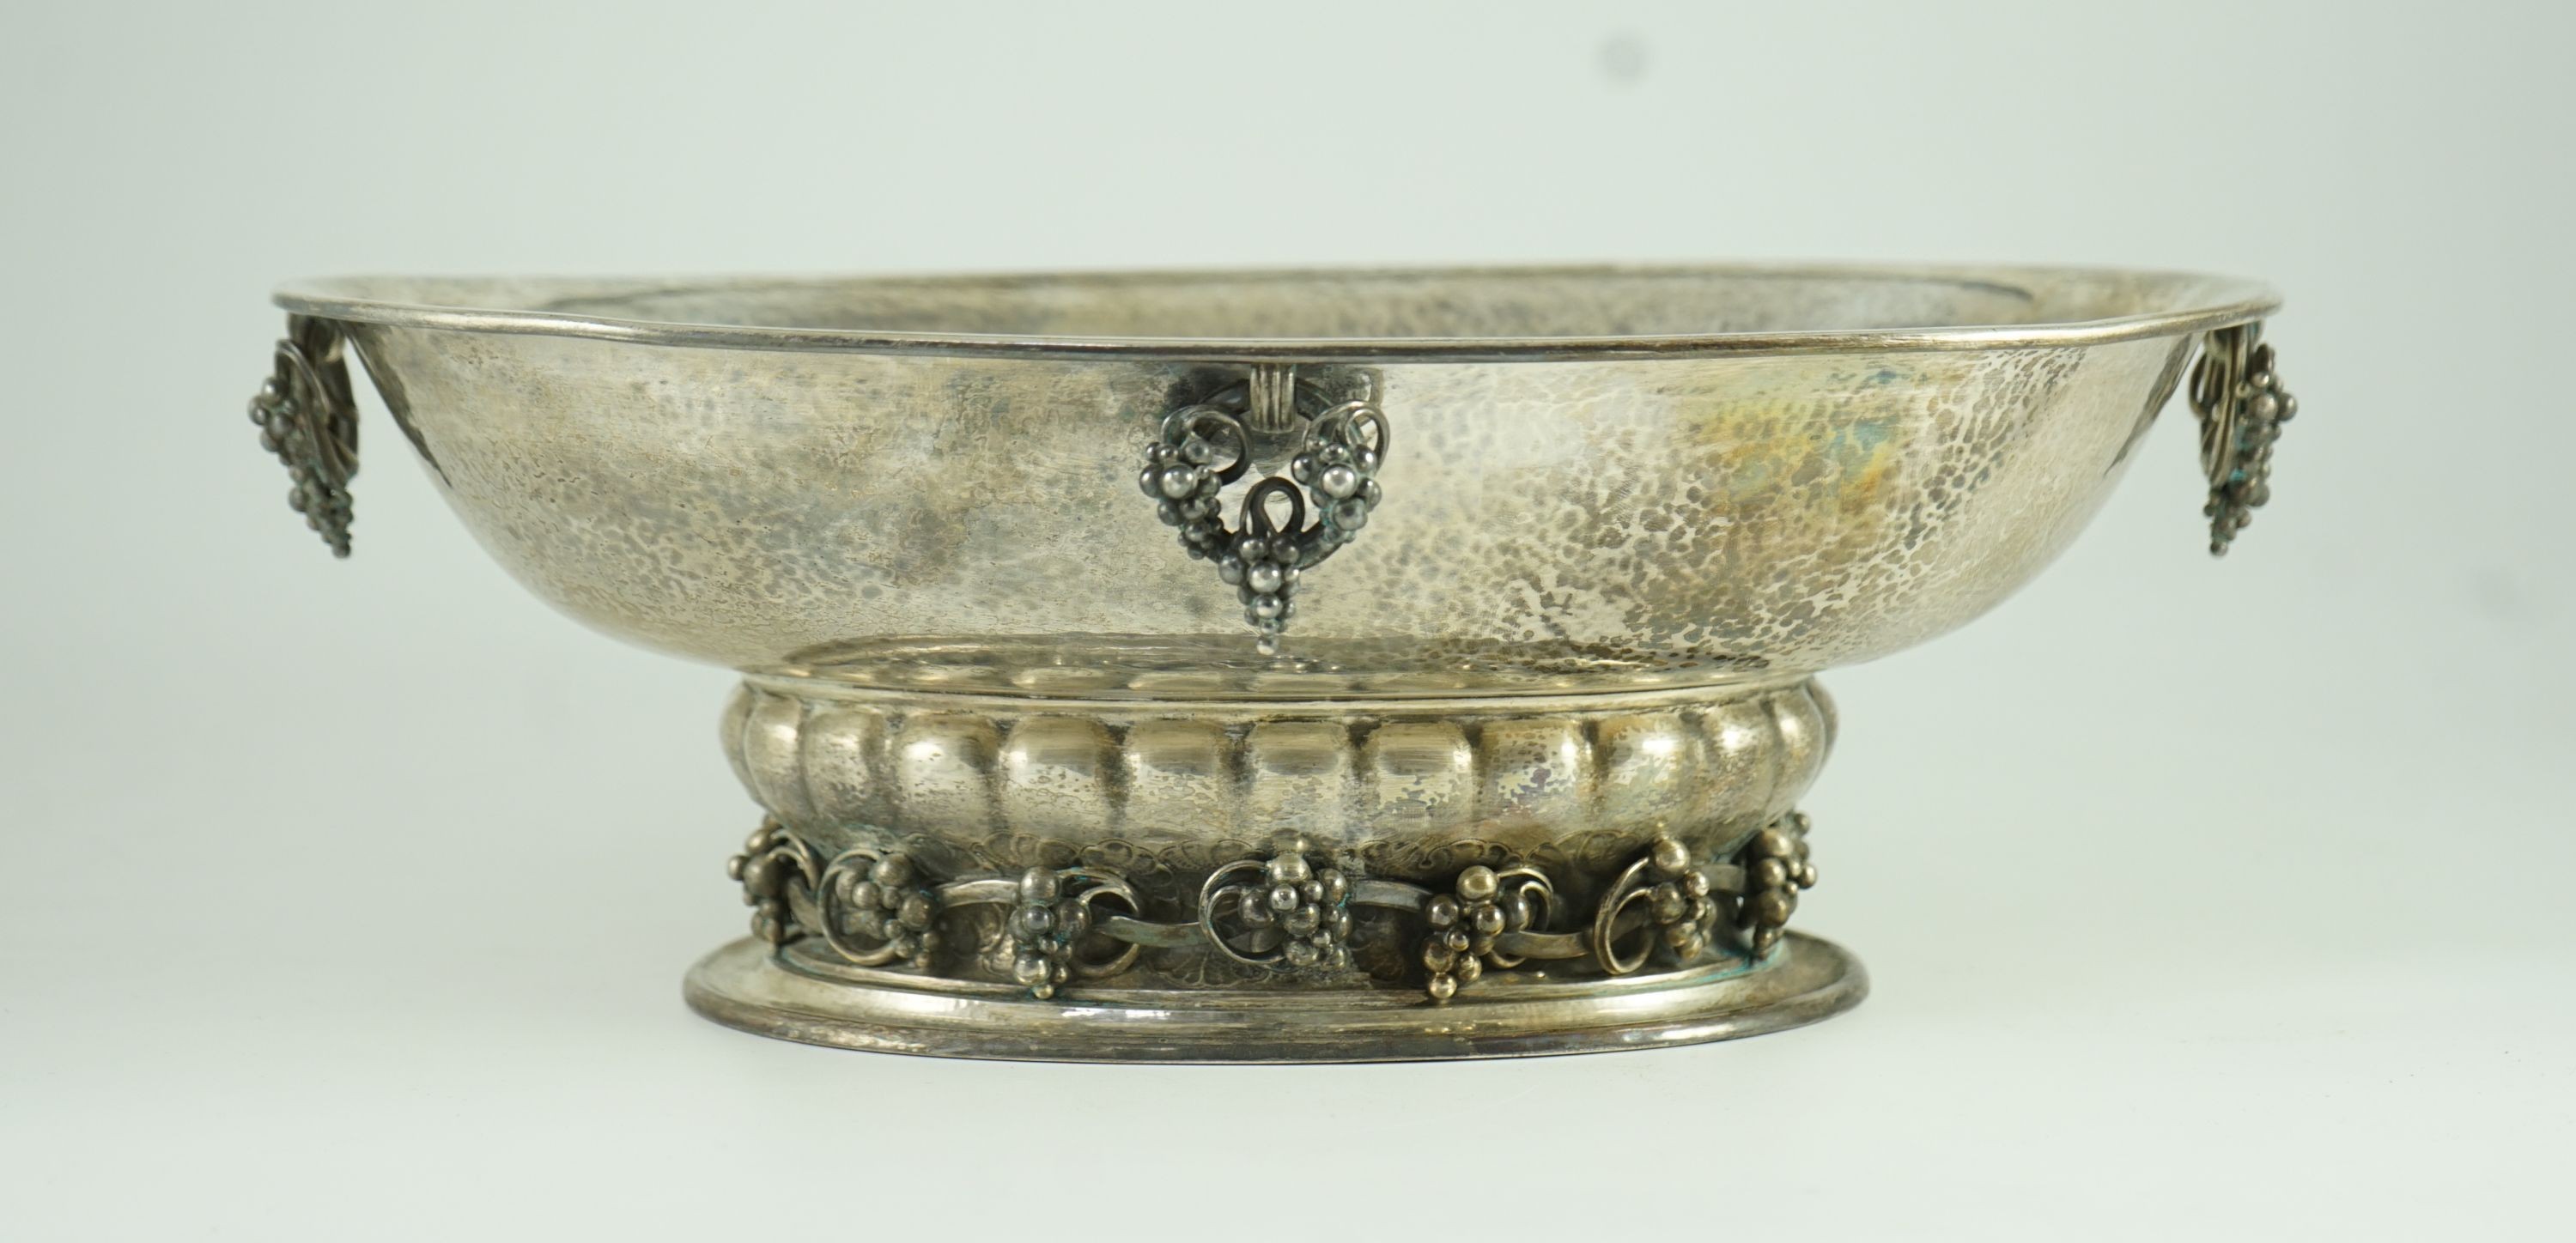 A good George V Georg Jensen planished silver Grape pattern oval pedestal fruit bowl, design no. 296